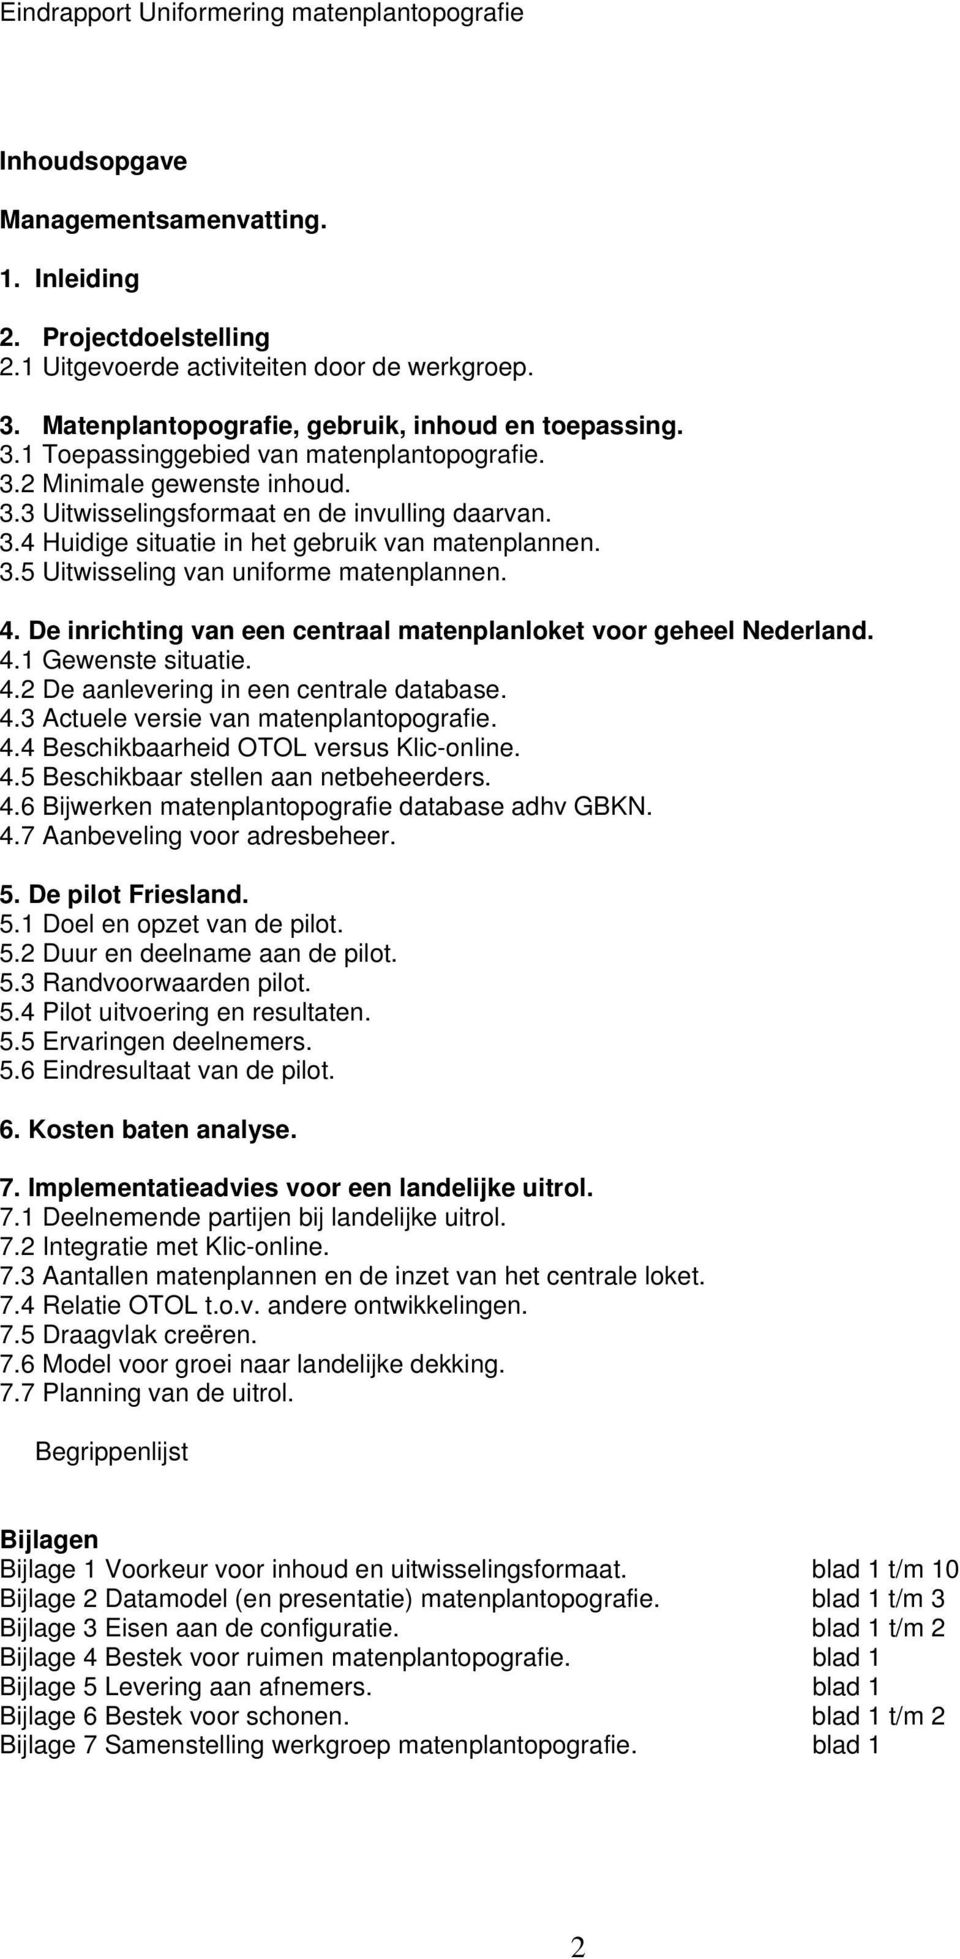 De inrichting van een centraal matenplanloket voor geheel Nederland. 4.1 Gewenste situatie. 4.2 De aanlevering in een centrale database. 4.3 Actuele versie van matenplantopografie. 4.4 Beschikbaarheid OTOL versus Klic-online.